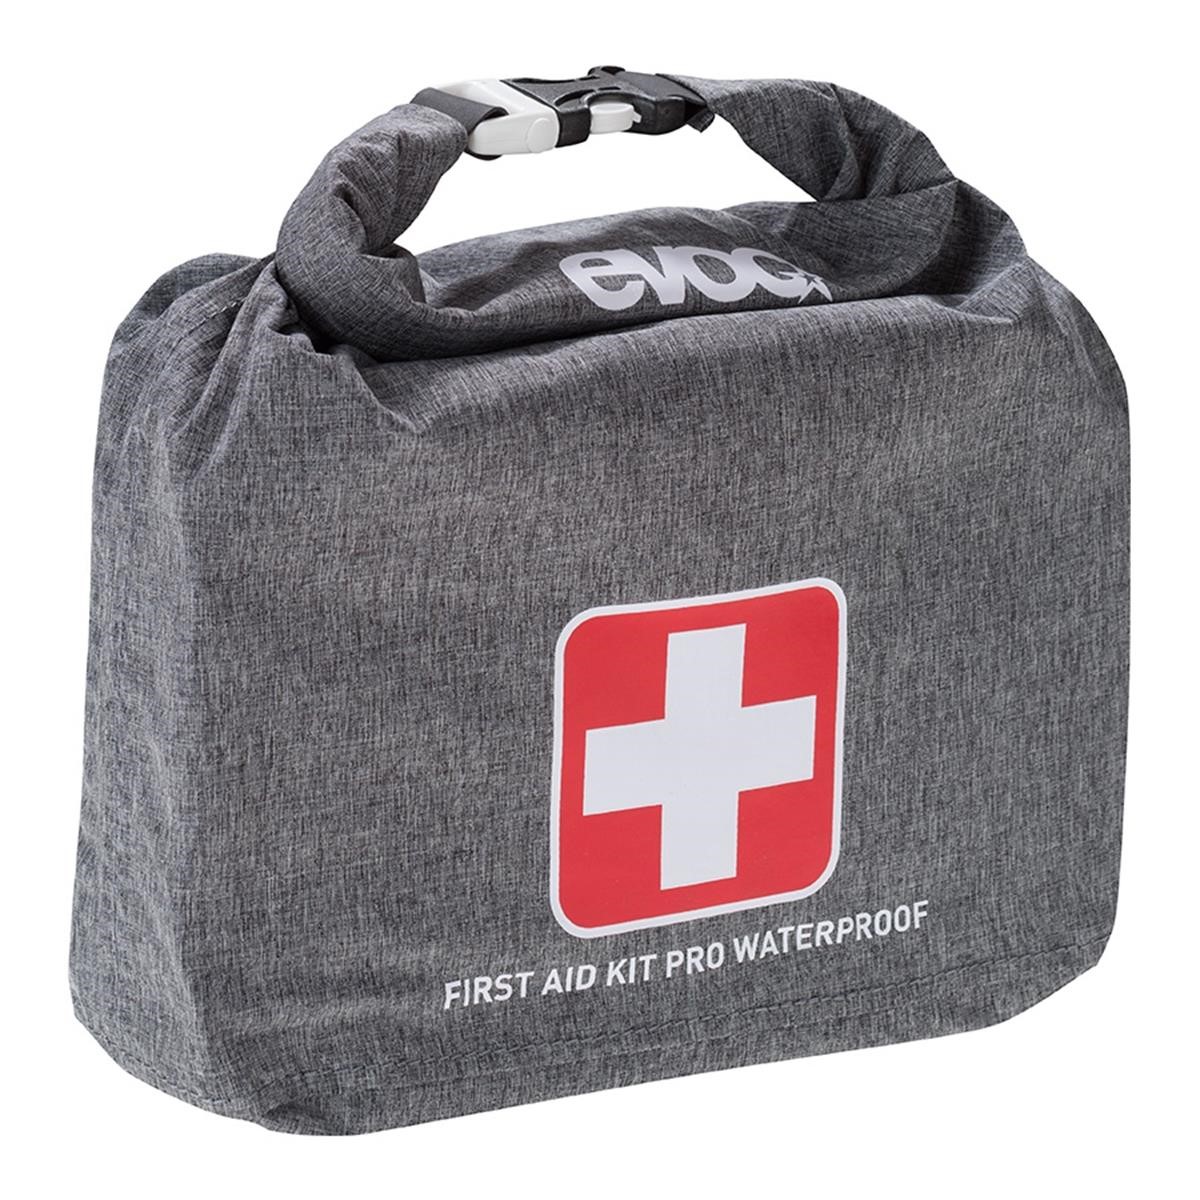 Evoc Ausrüstungstasche First Aid Kit Pro Waterproof Black/Heather Grey, 3 Liter